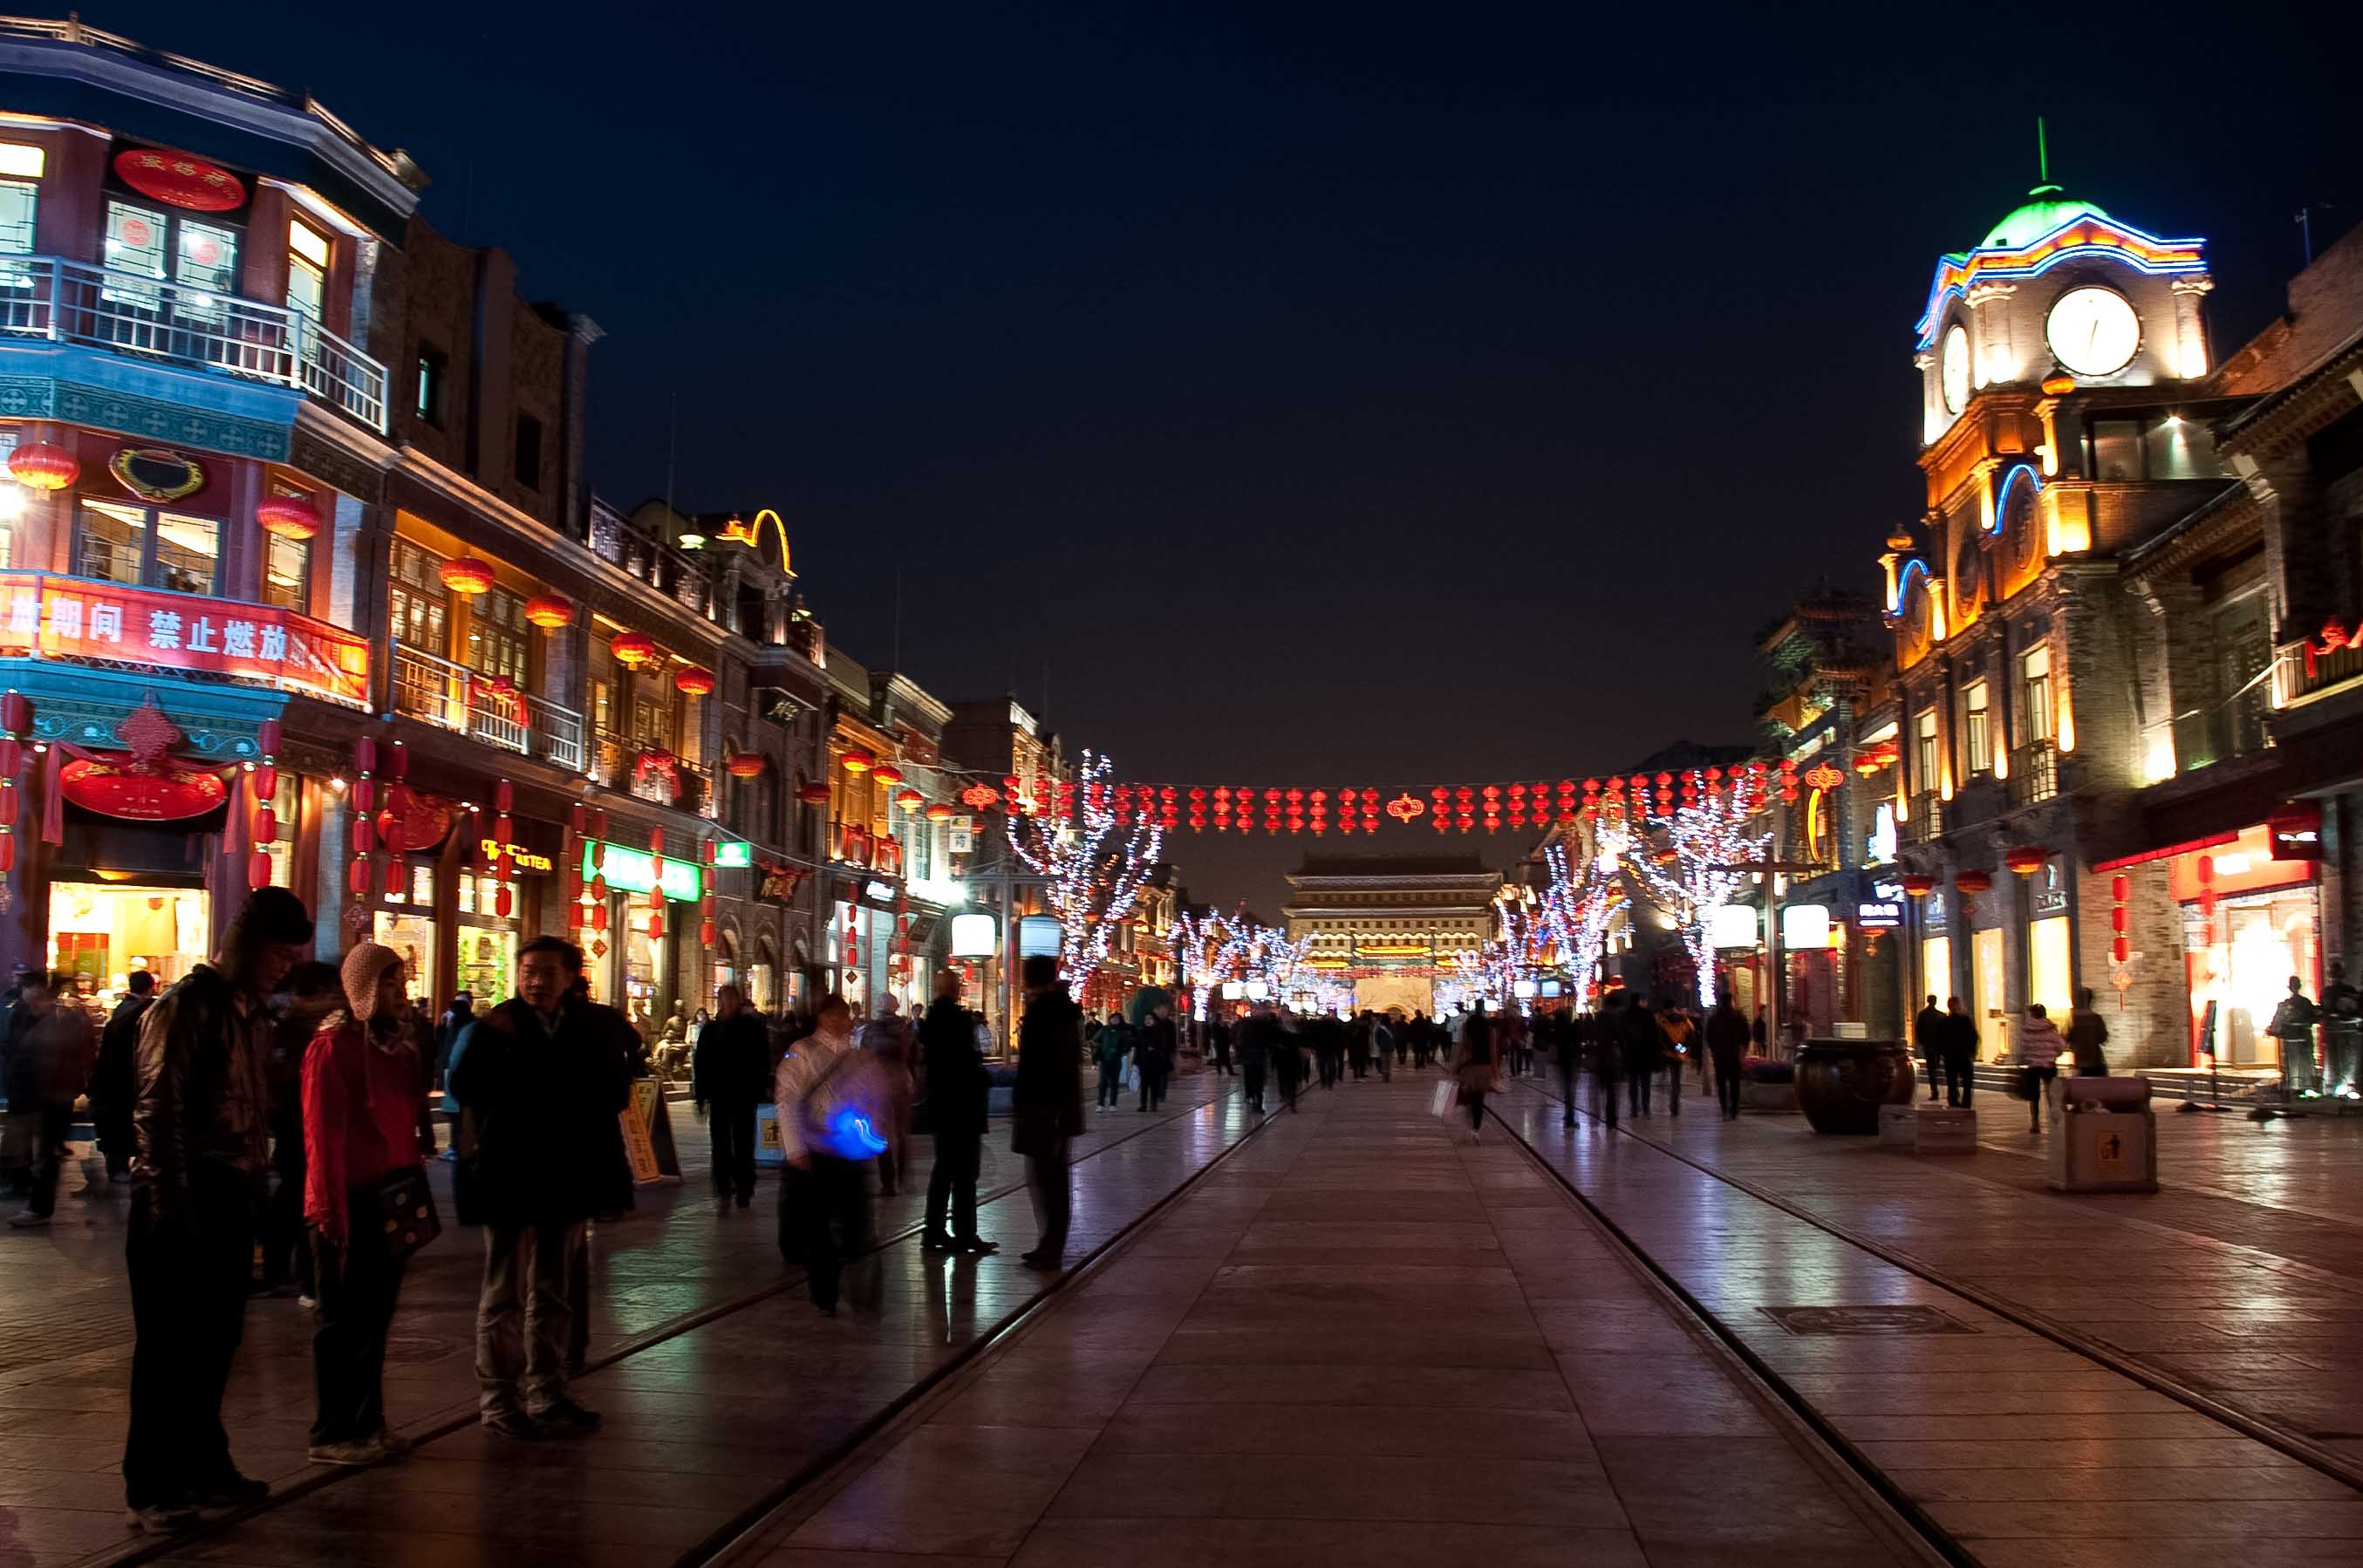 北京的街景图片 最美图片